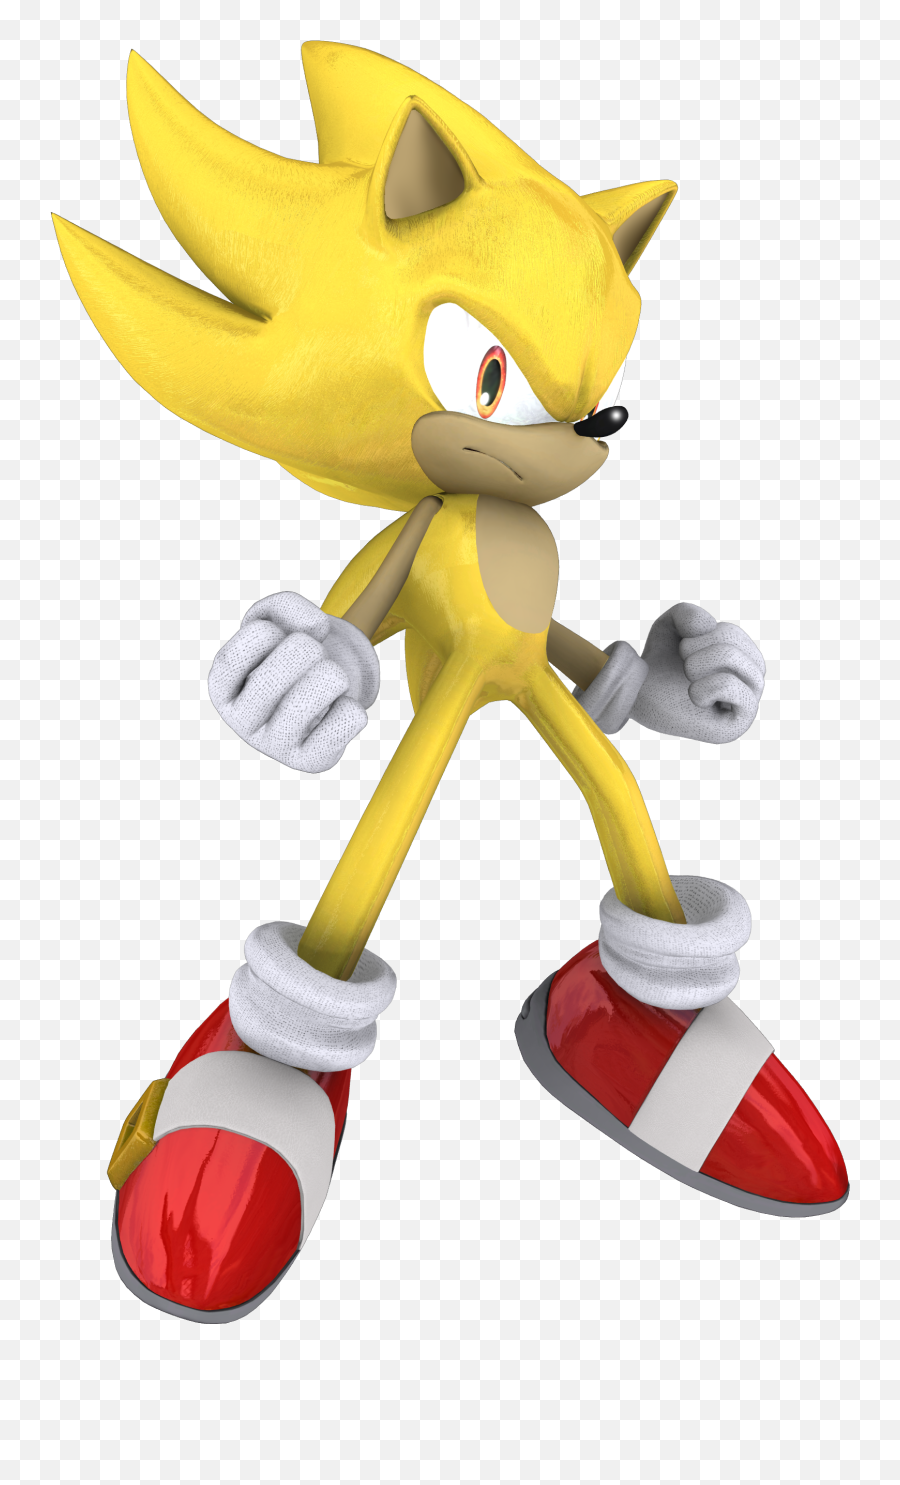 Download Sonic The Hedgehog Golden - Full Size Png Image Sonic The Hedgehog Super Emoji,Sonic The Hedgehog Transparent